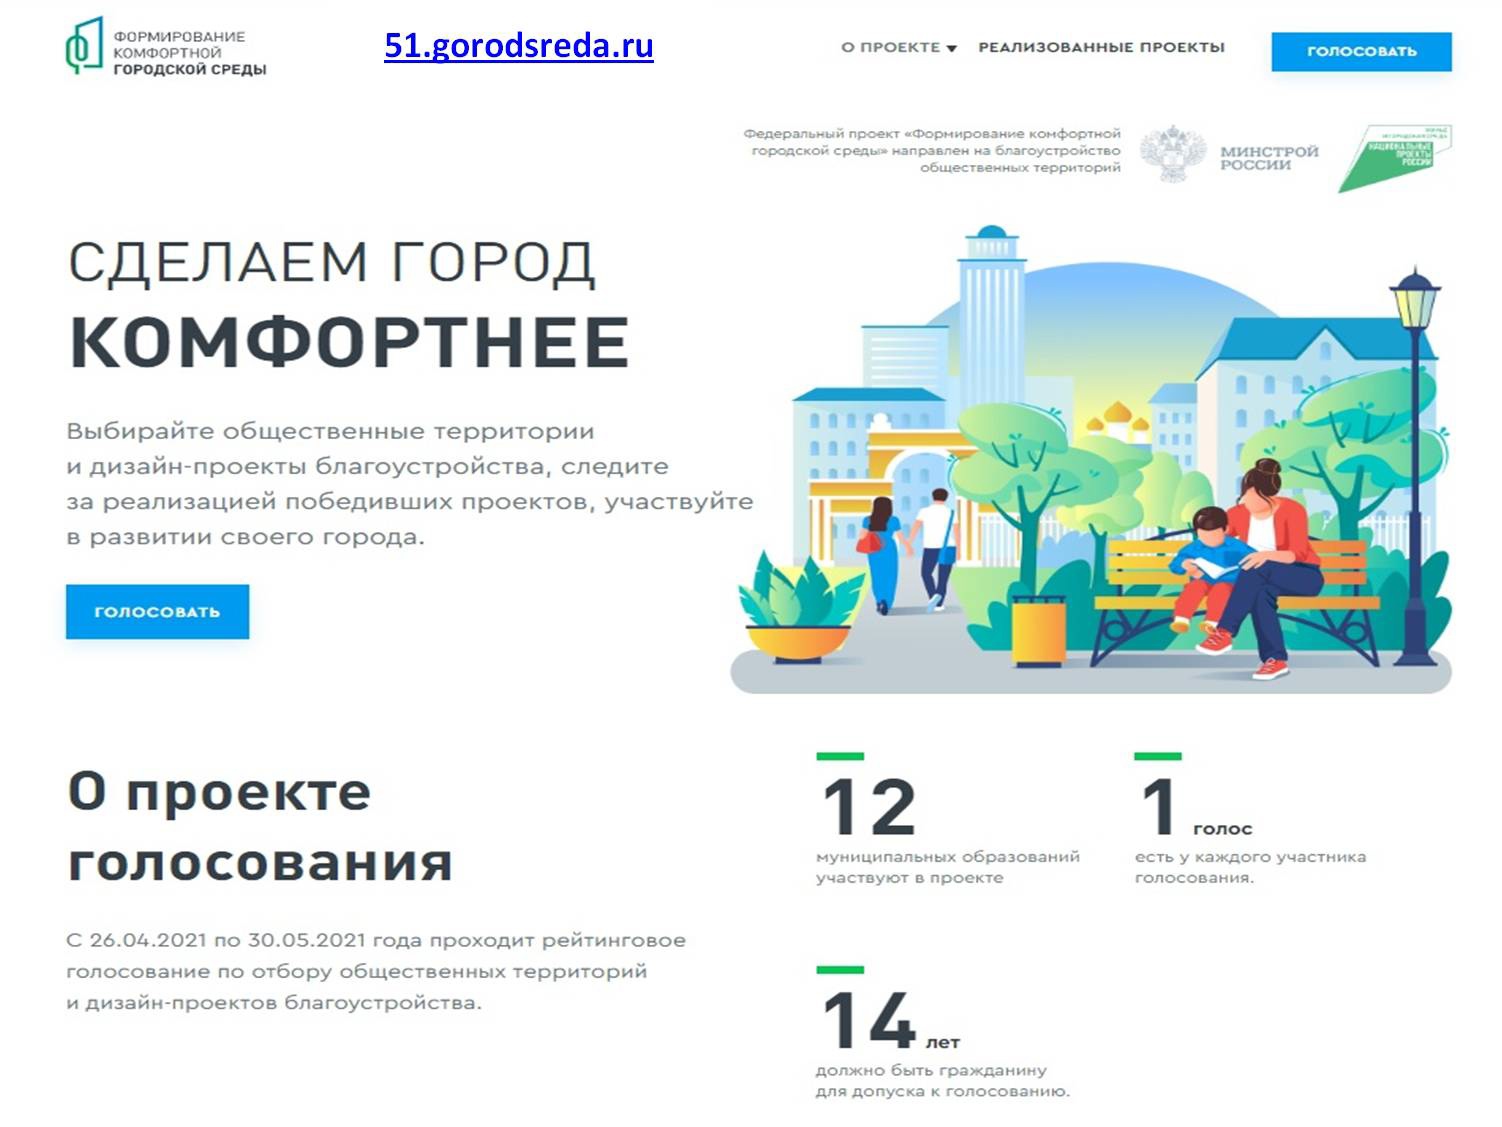 Portal ru votes voting platform 2024 300. Формирование комфортной городской среды. Формирование комфортной городской среды 2021. Формирование комфортной городской среды голосование. Формирование комфортной городской среды 2022.